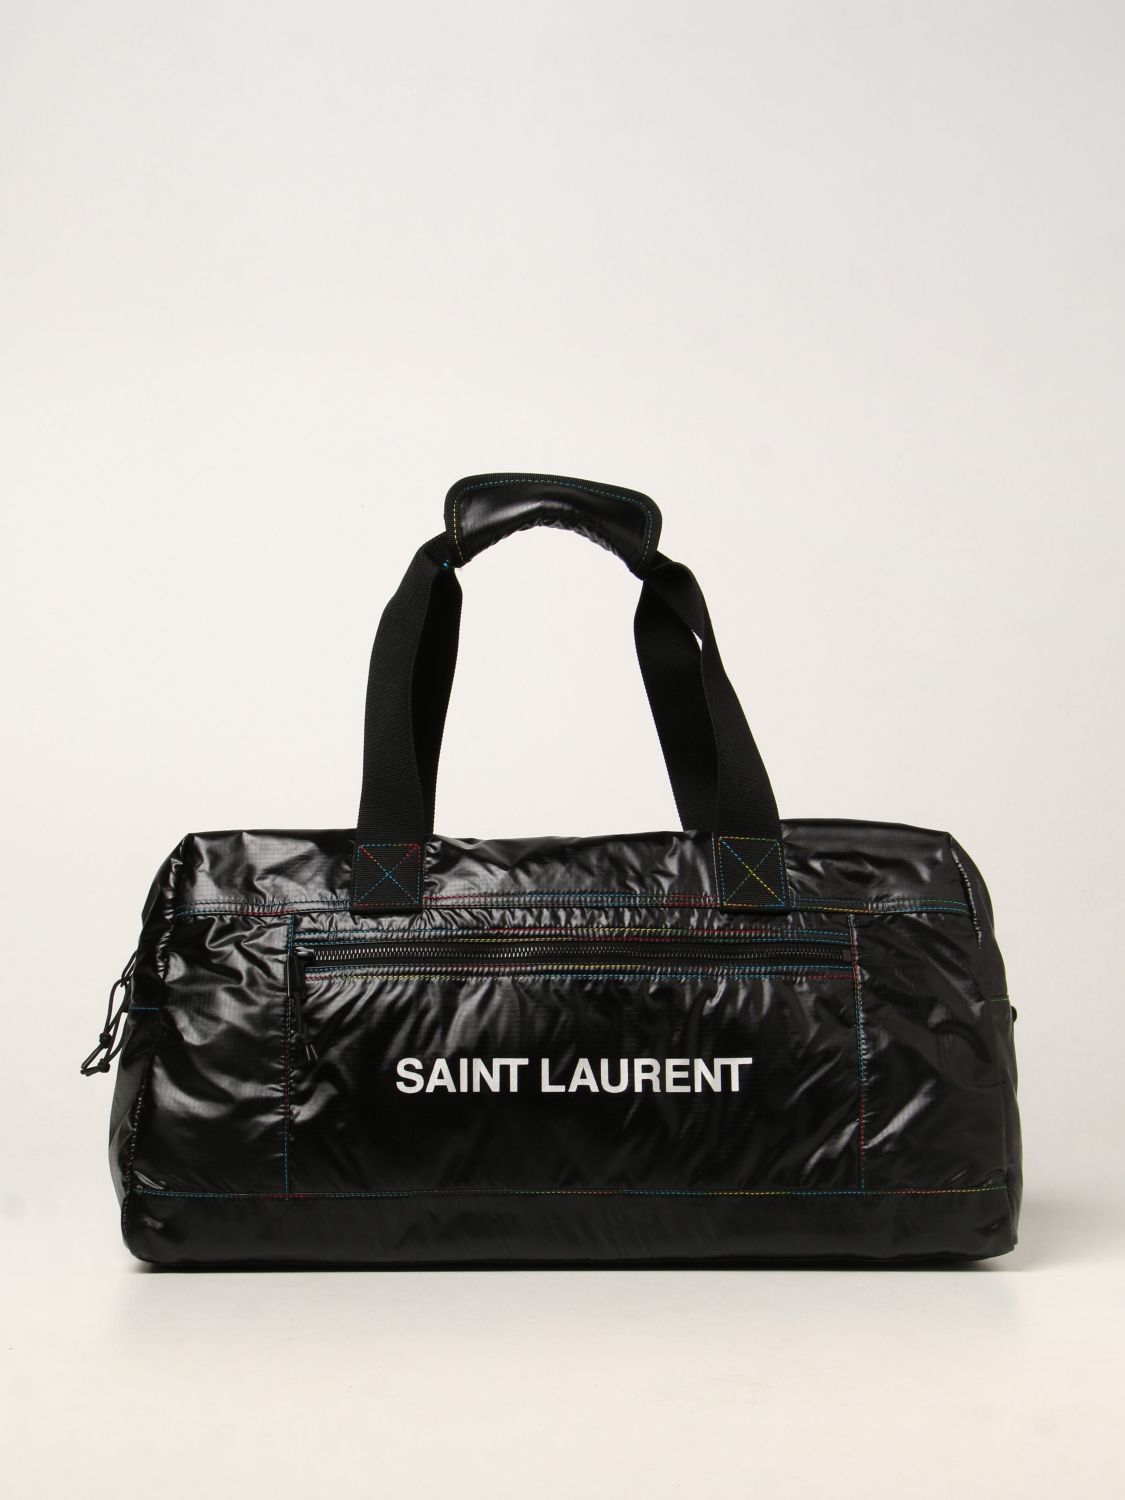 Travel bag Saint Laurent: Saint Laurent Nuxx Duffle bag black 1